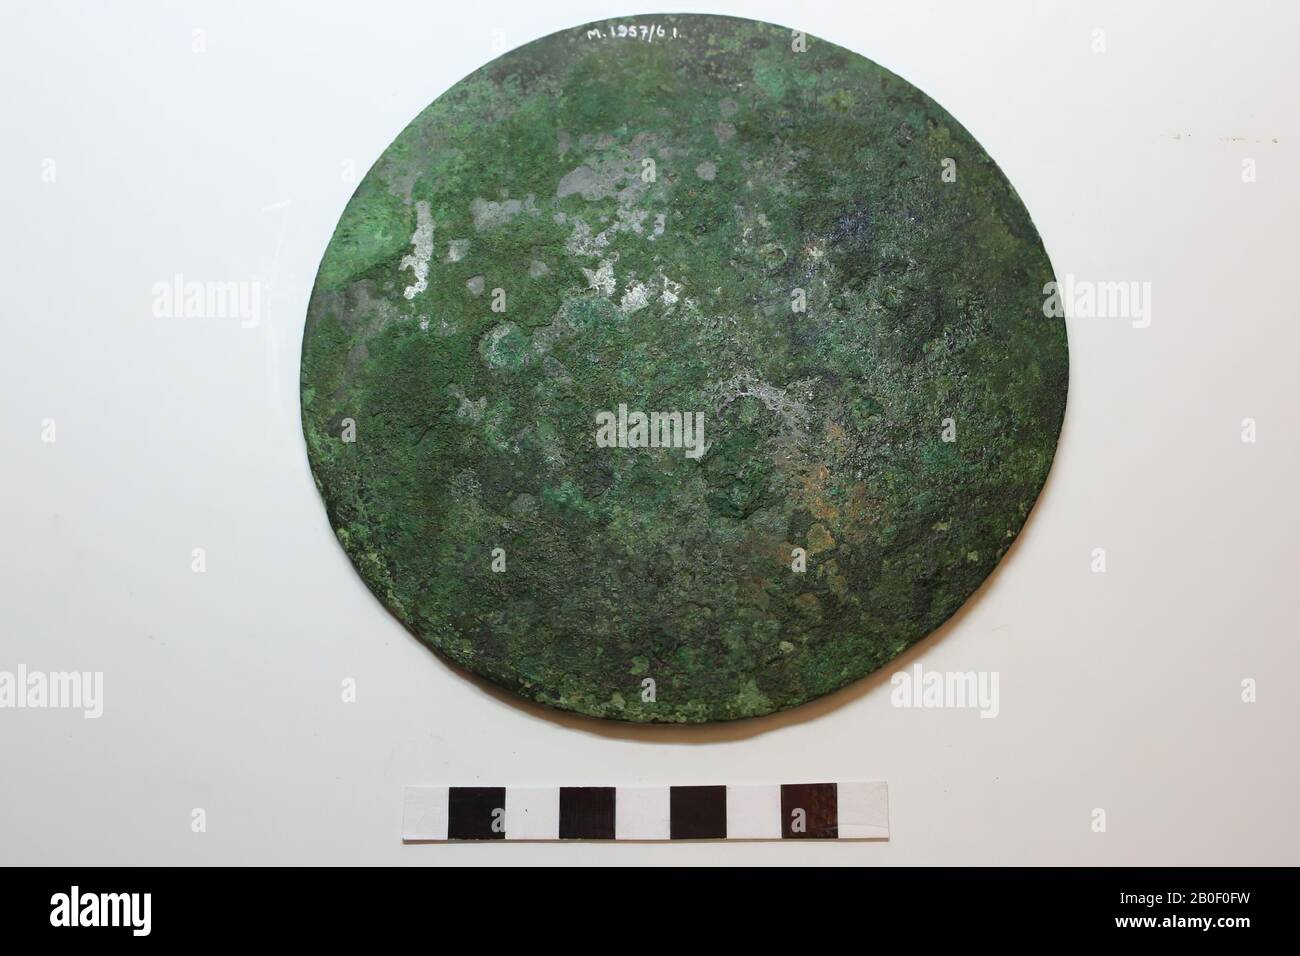 Numéro incorrect sur l'objet, miroir en trois parties, miroir, métal, bronze, 14,0 x 14,0 x 0,2 cm, romain, Allemagne, inconnu, inconnu, inconnu, inconnu Banque D'Images